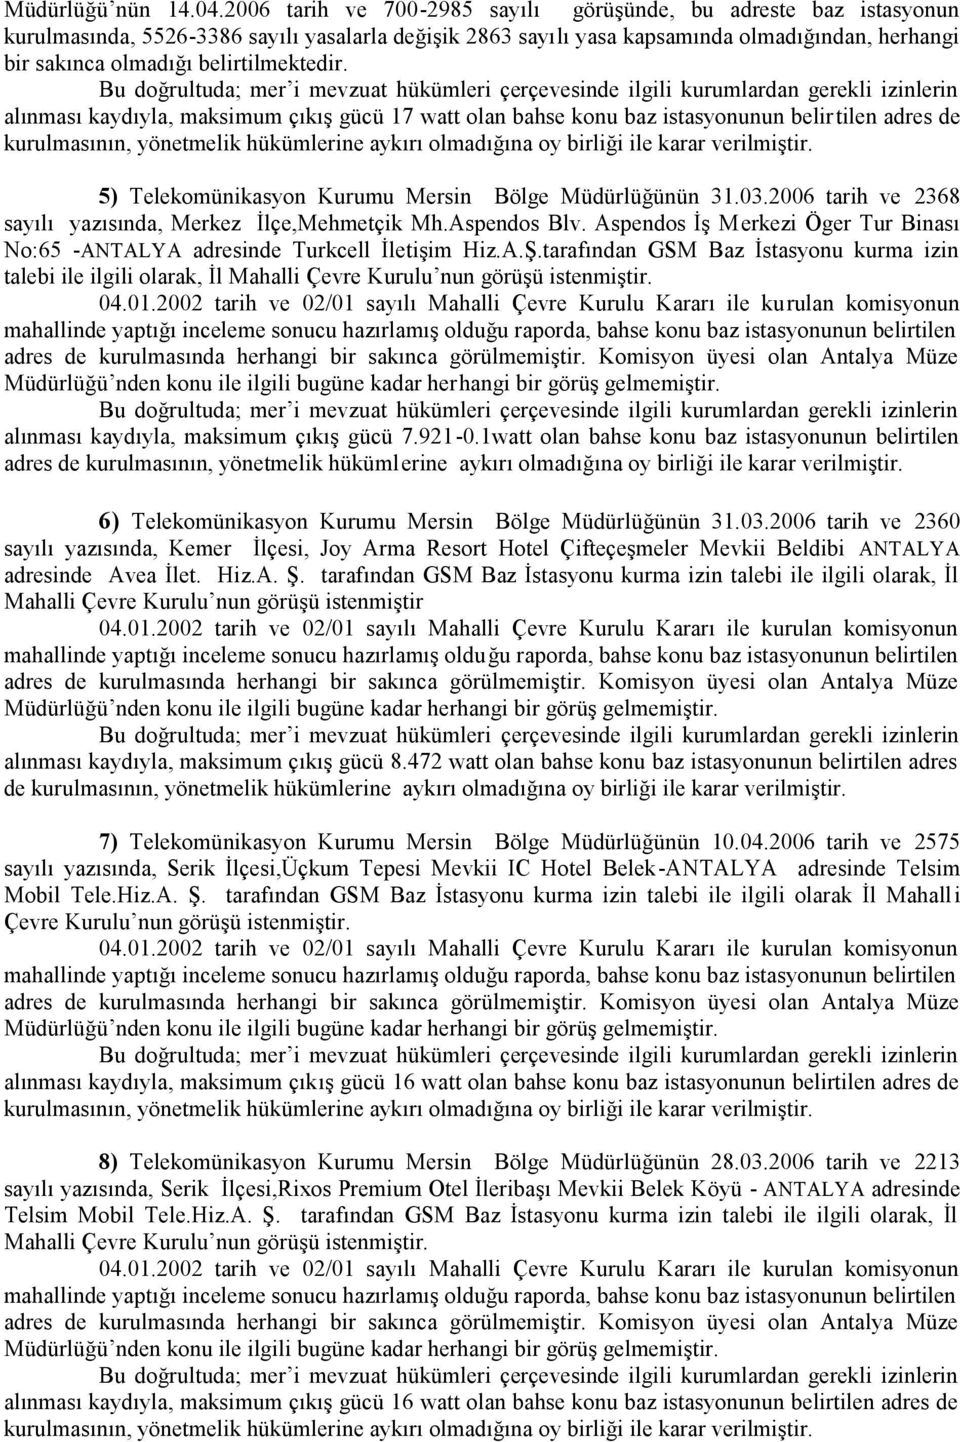 belirtilmektedir. 5) Telekomünikasyon Kurumu Mersin Bölge Müdürlüğünün 31.03.2006 tarih ve 2368 sayılı yazısında, Merkez İlçe,Mehmetçik Mh.Aspendos Blv.